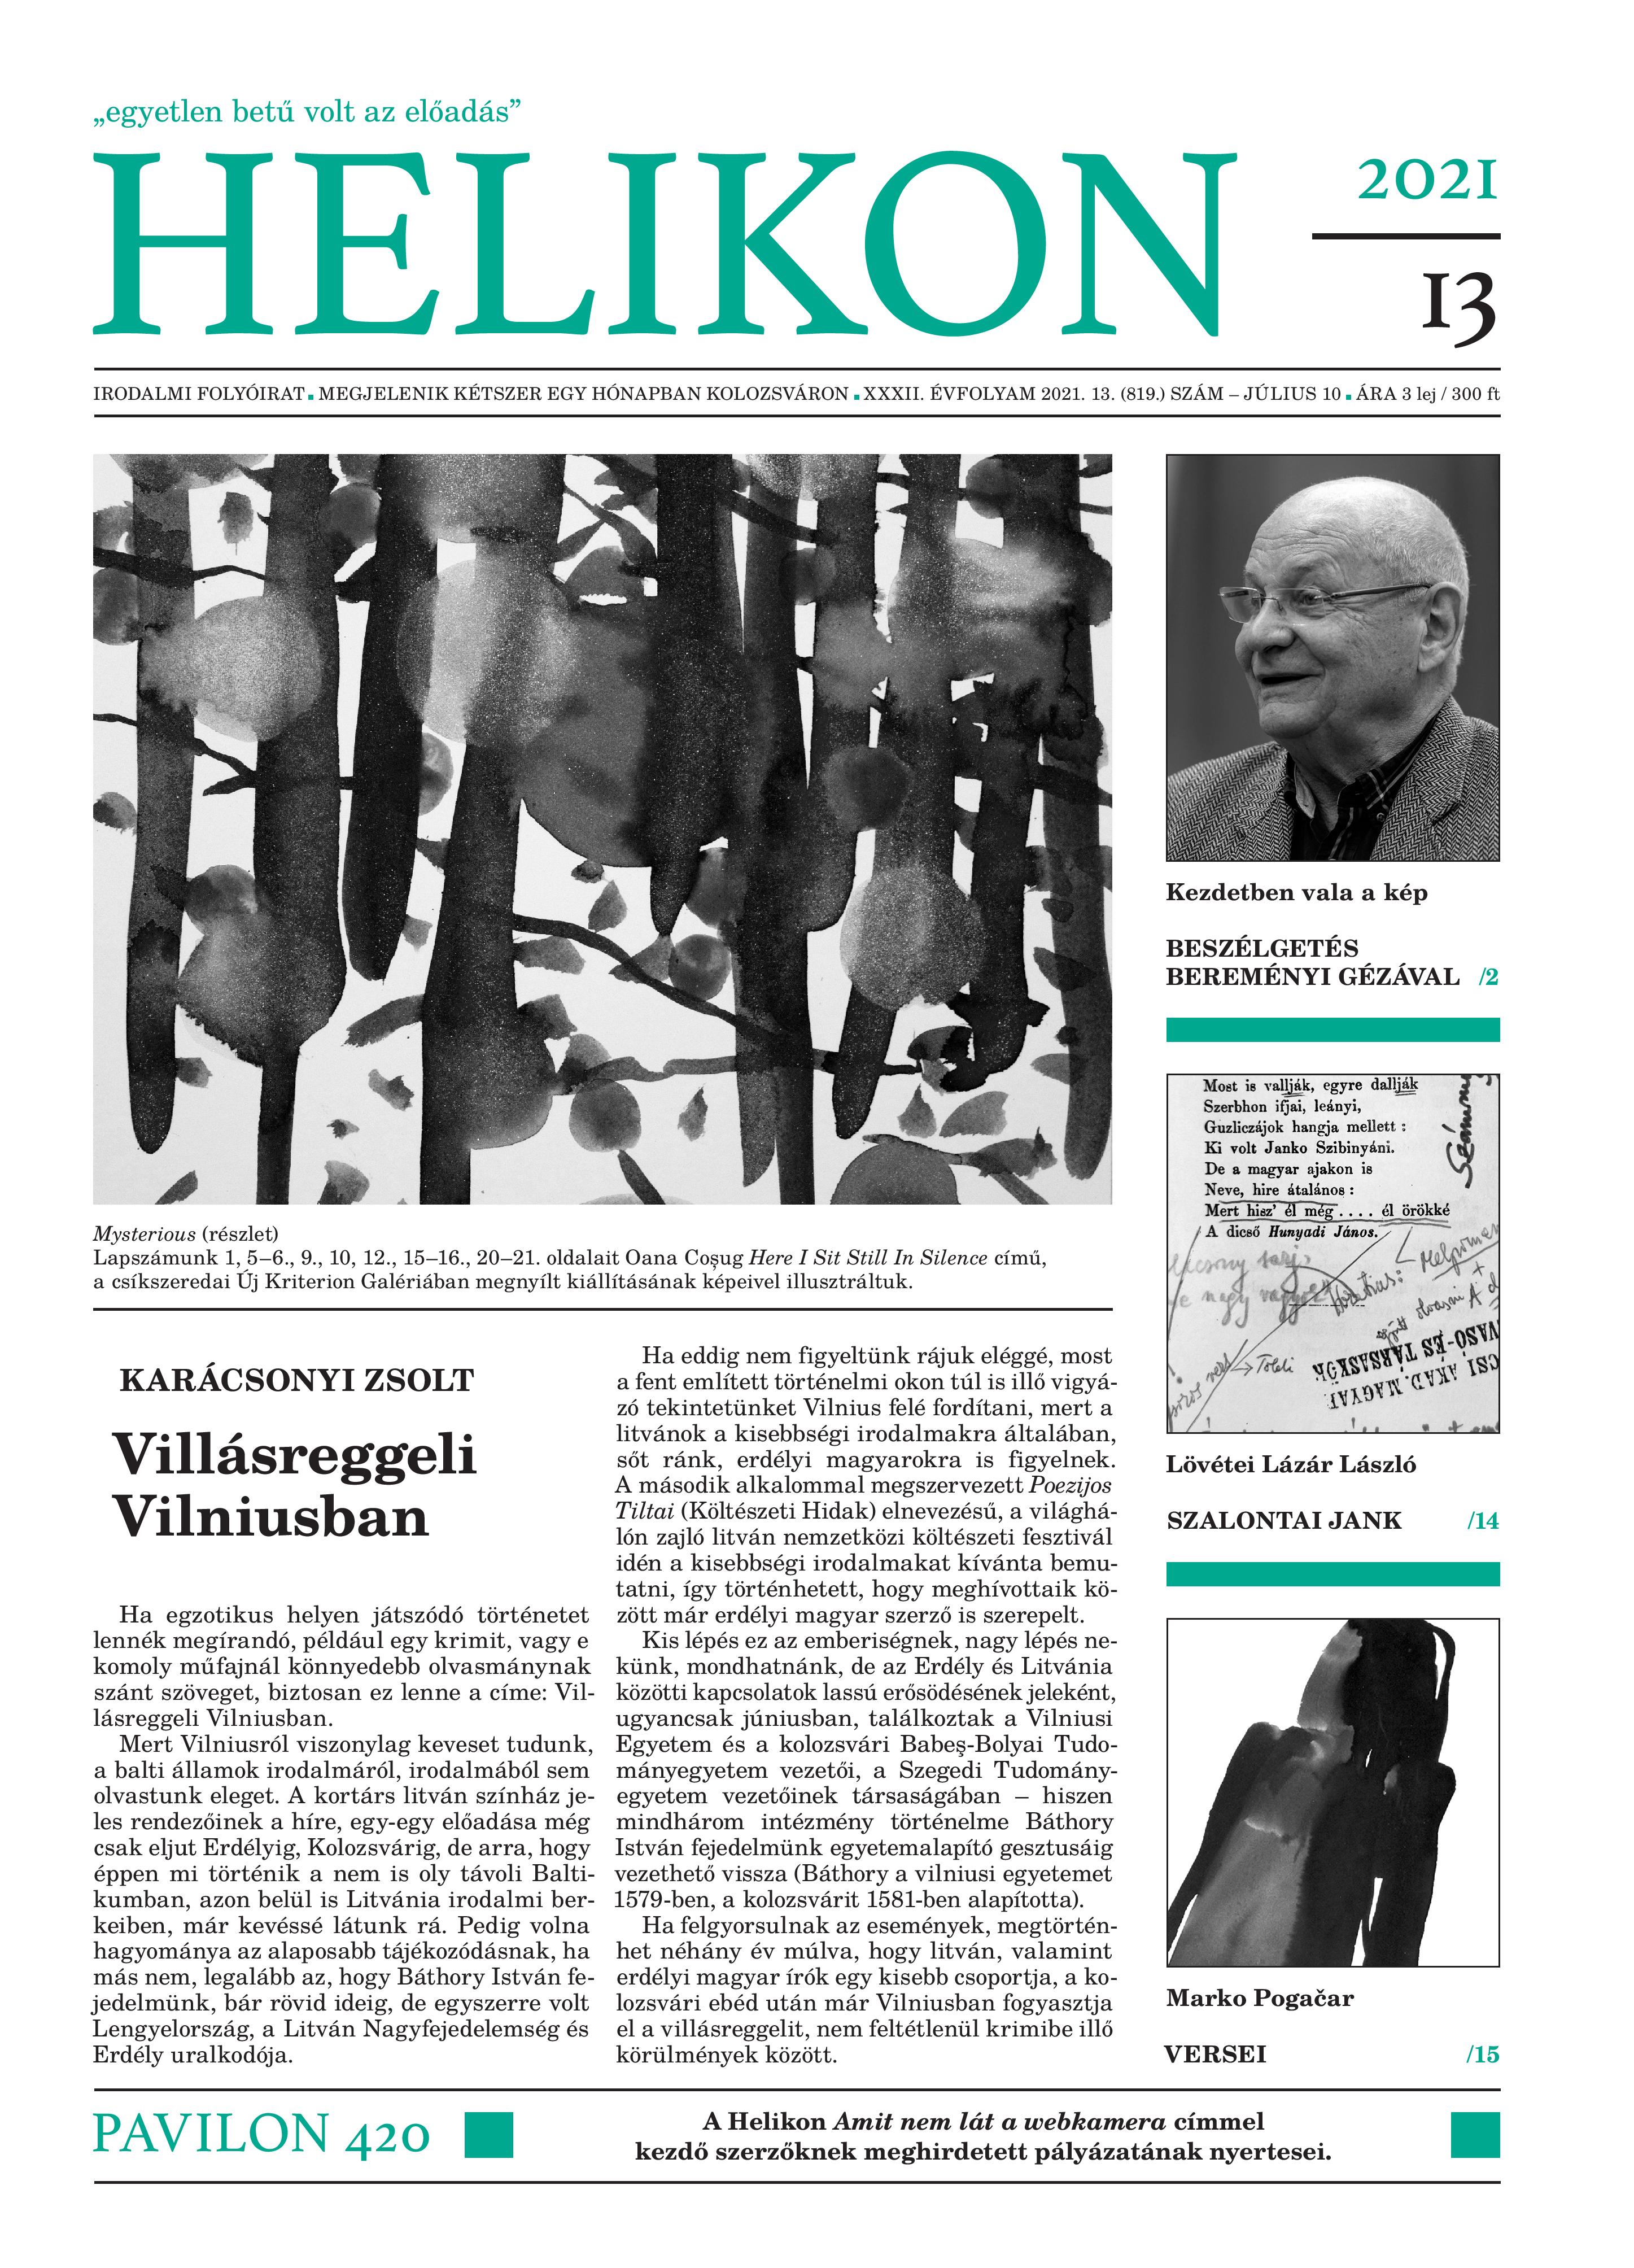 Brunch In Vilnius Cover Image